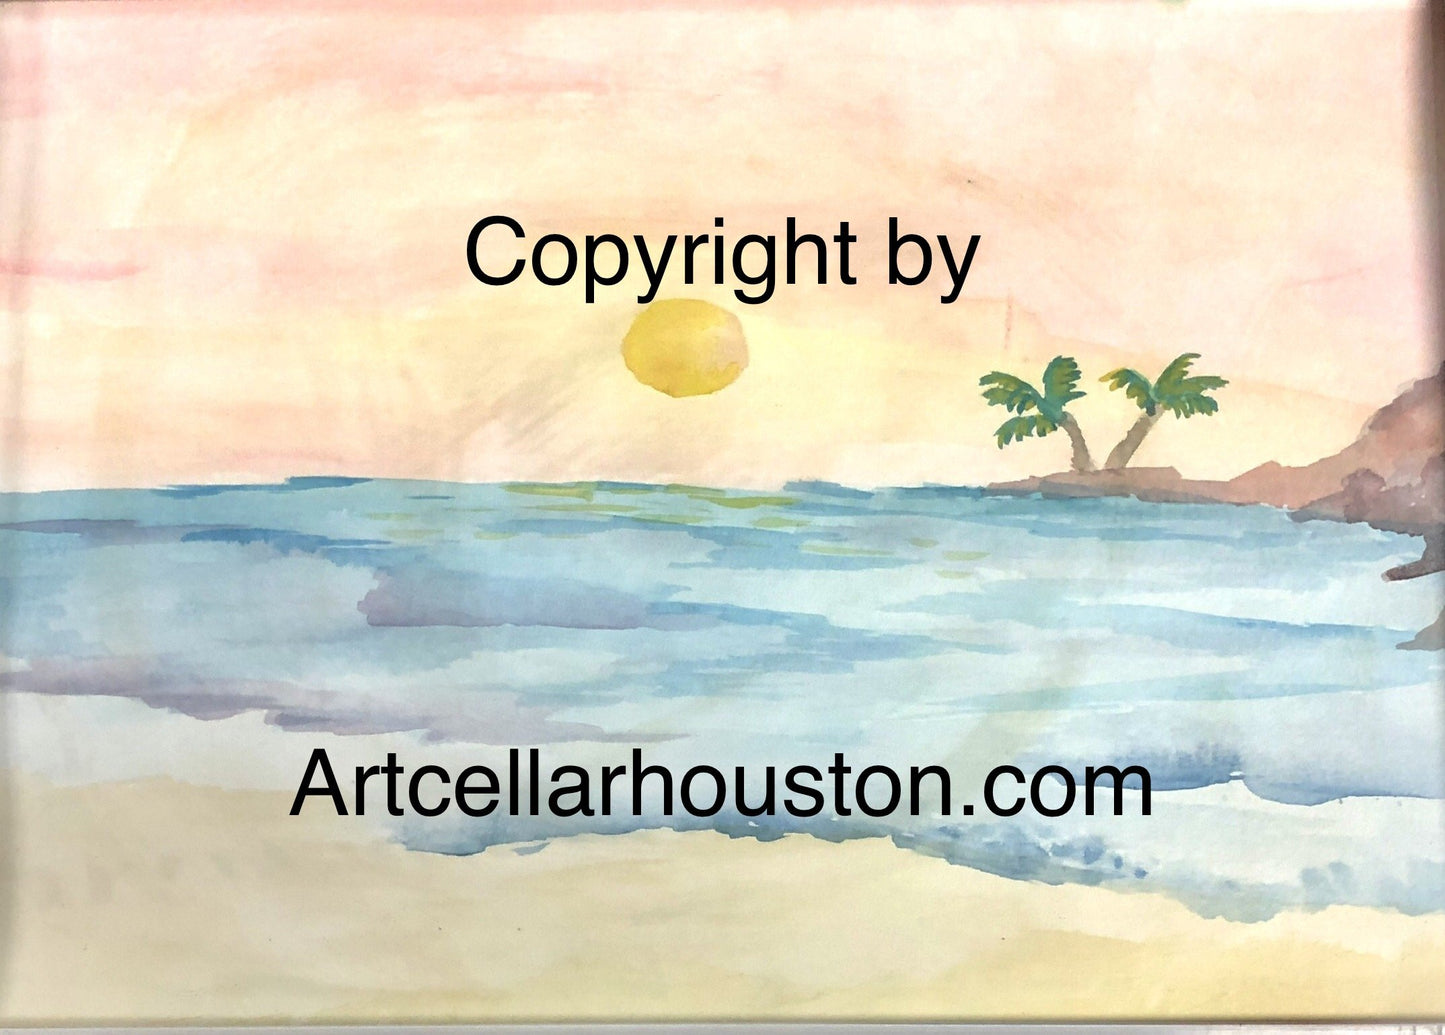 Tue, Jan 19, 1230-230p Kids Home School Art Class: Watercolors, Sunset Beach